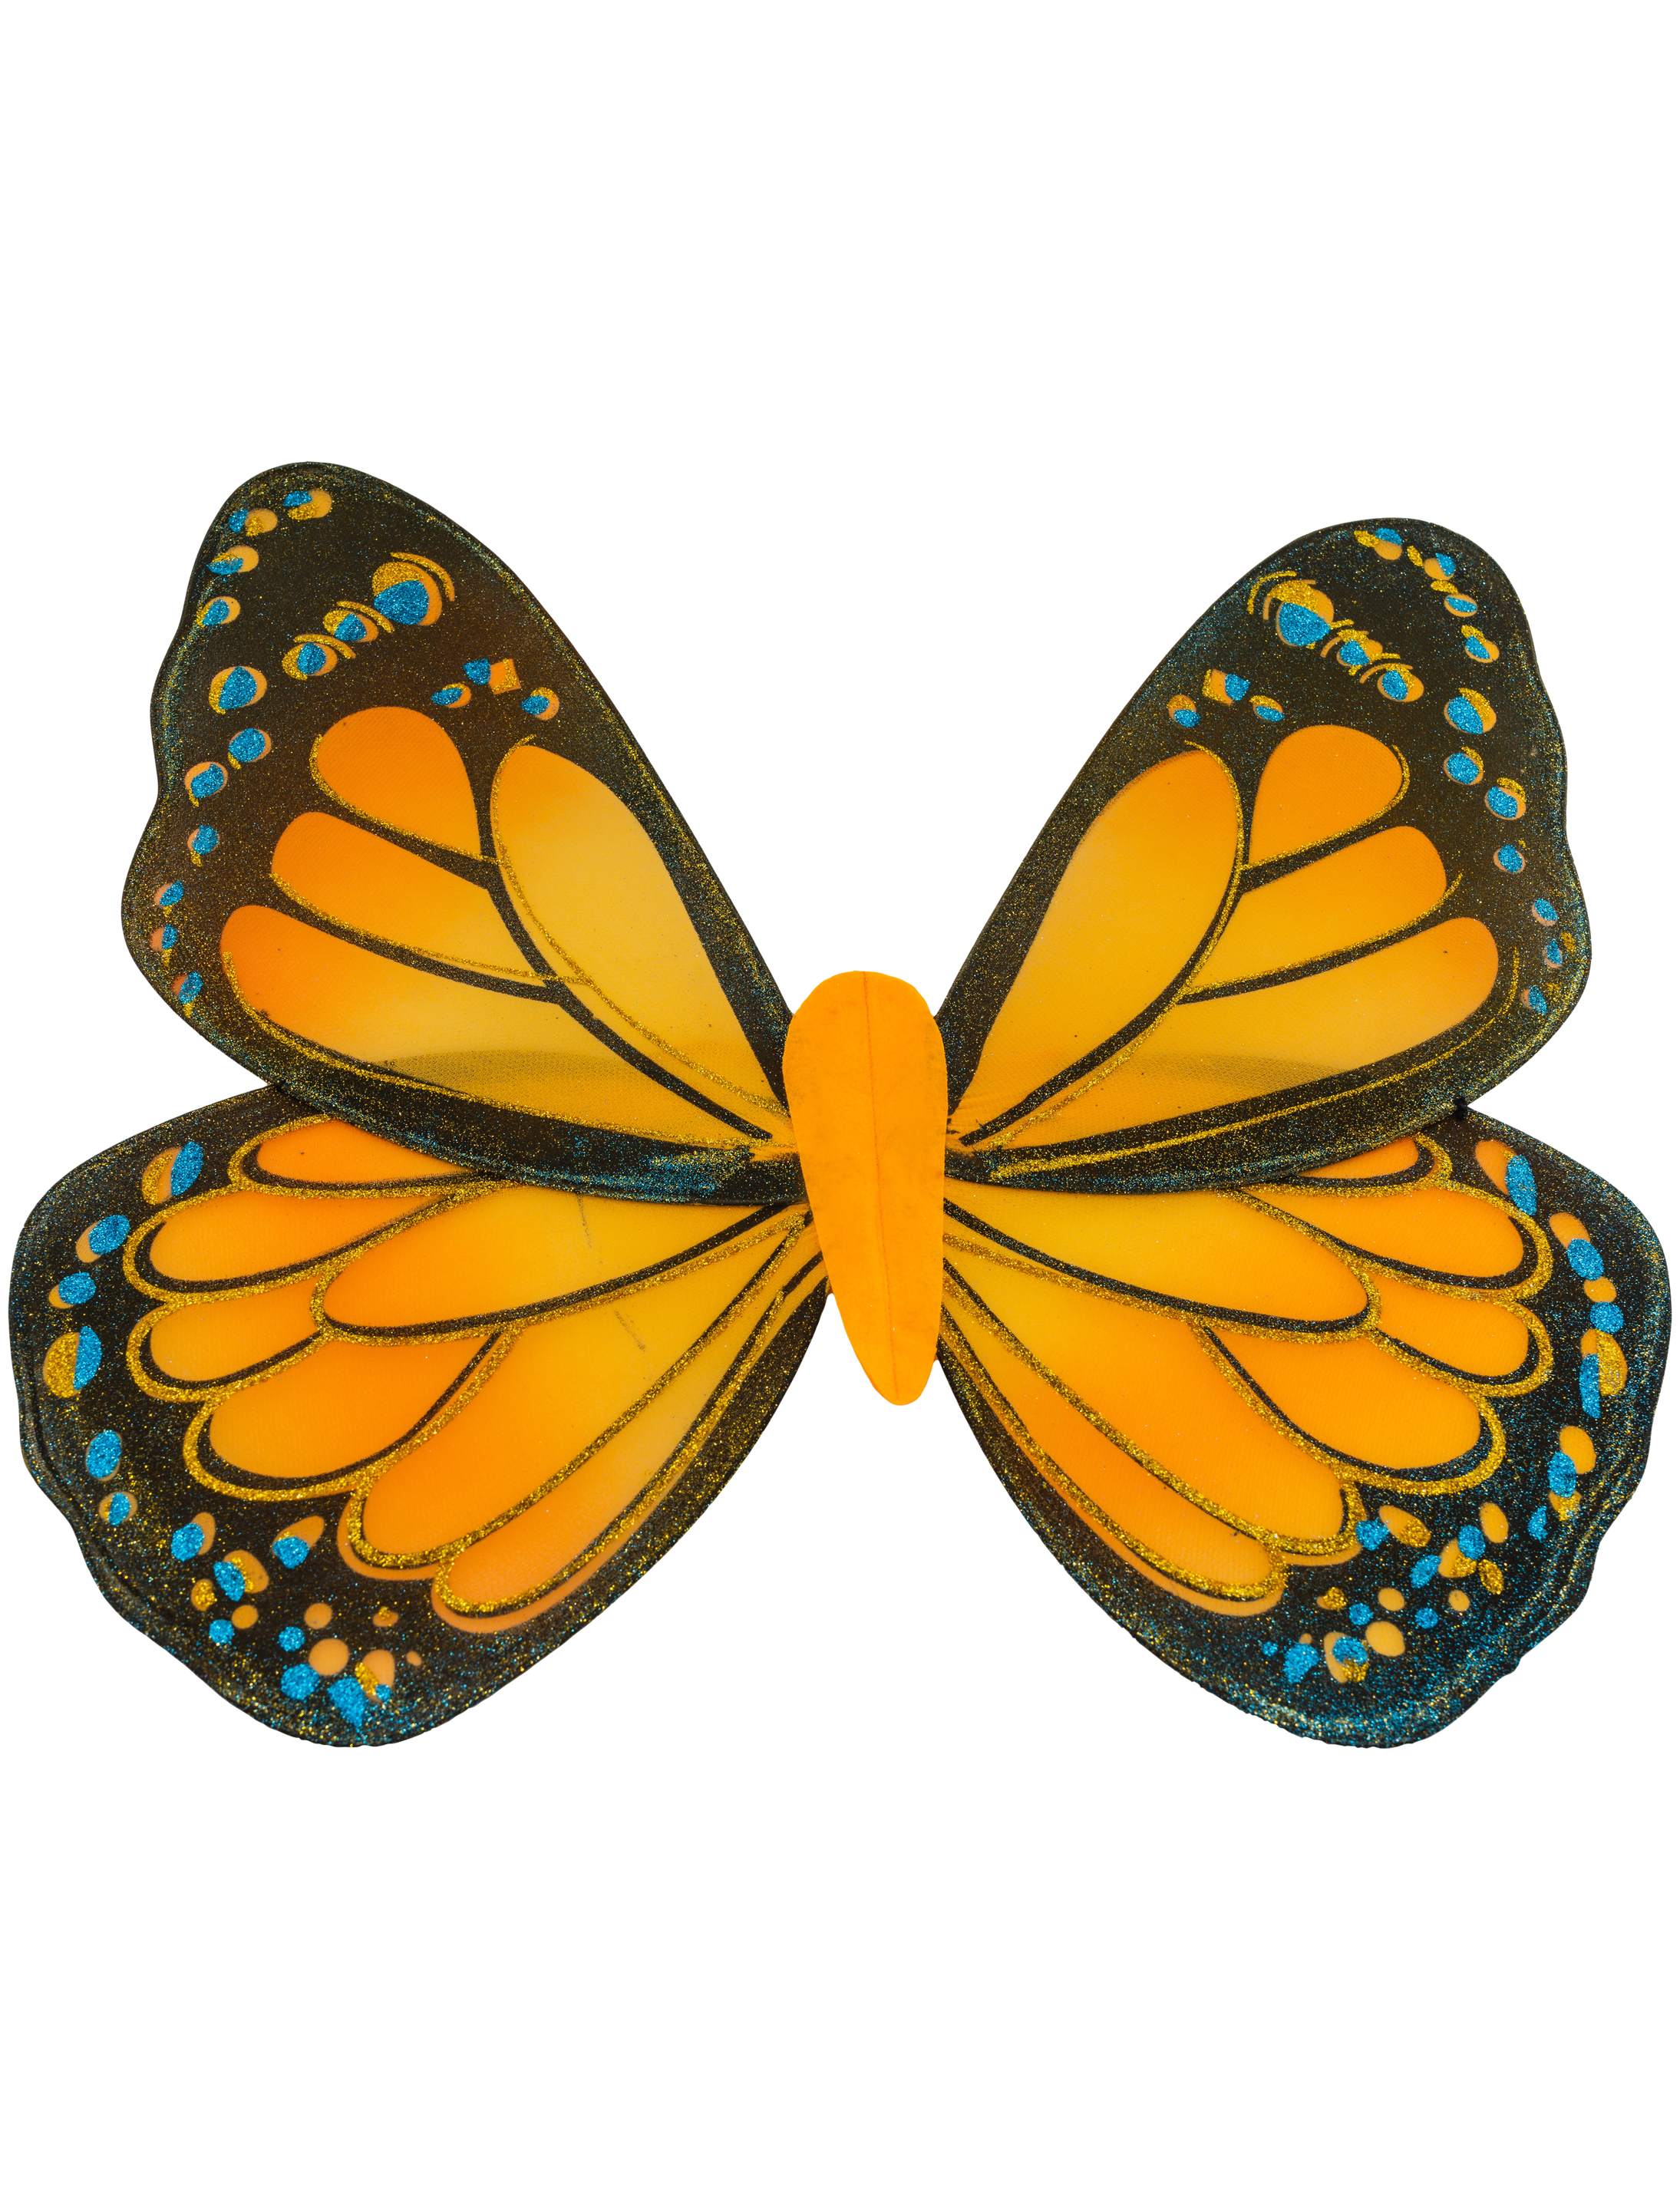 Schmetterlingsflügel orange/schwarz 59 x 51 cm